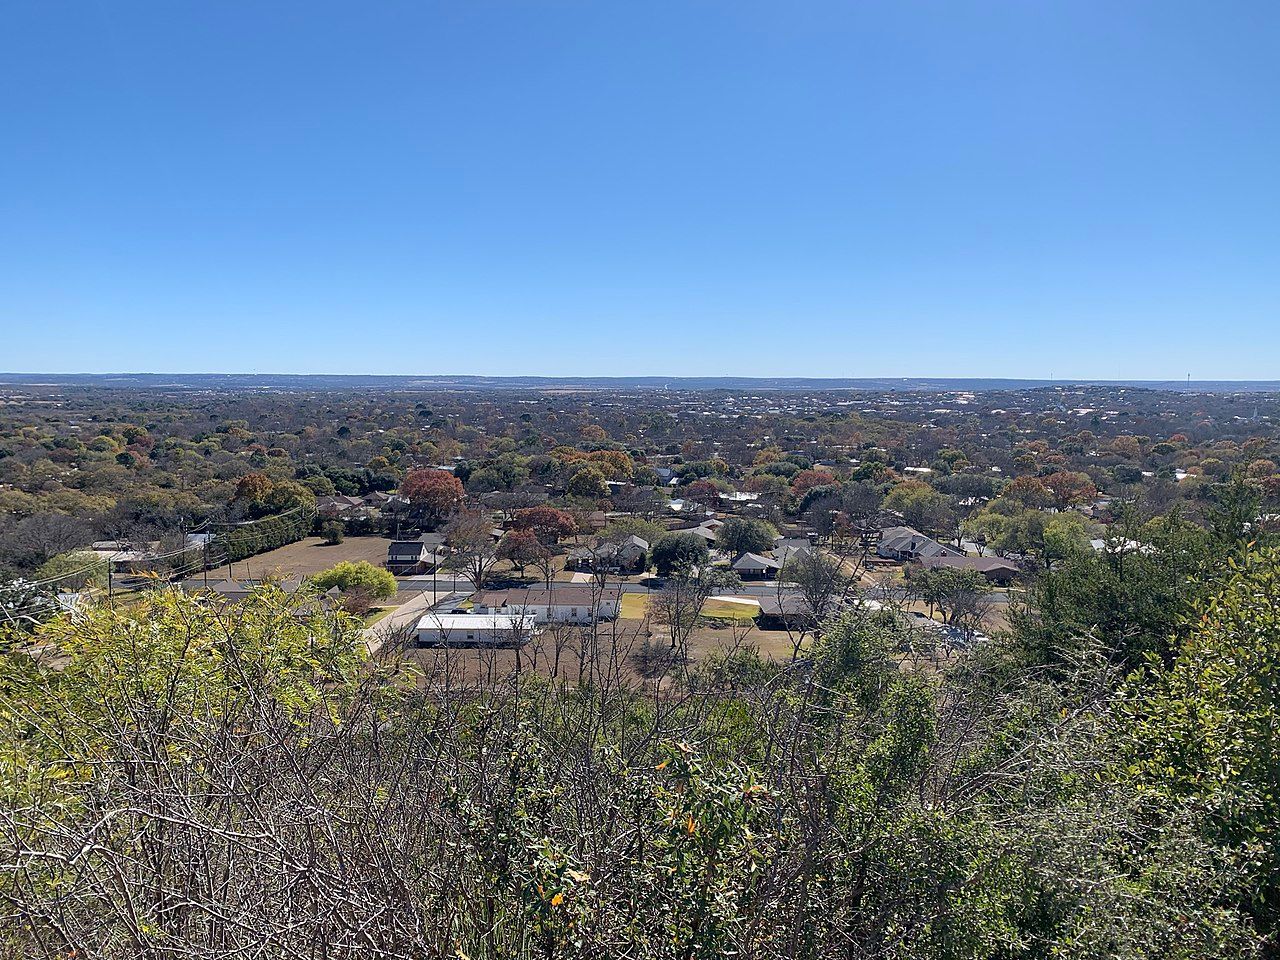 An aerial view of Fredericksburg, Texas